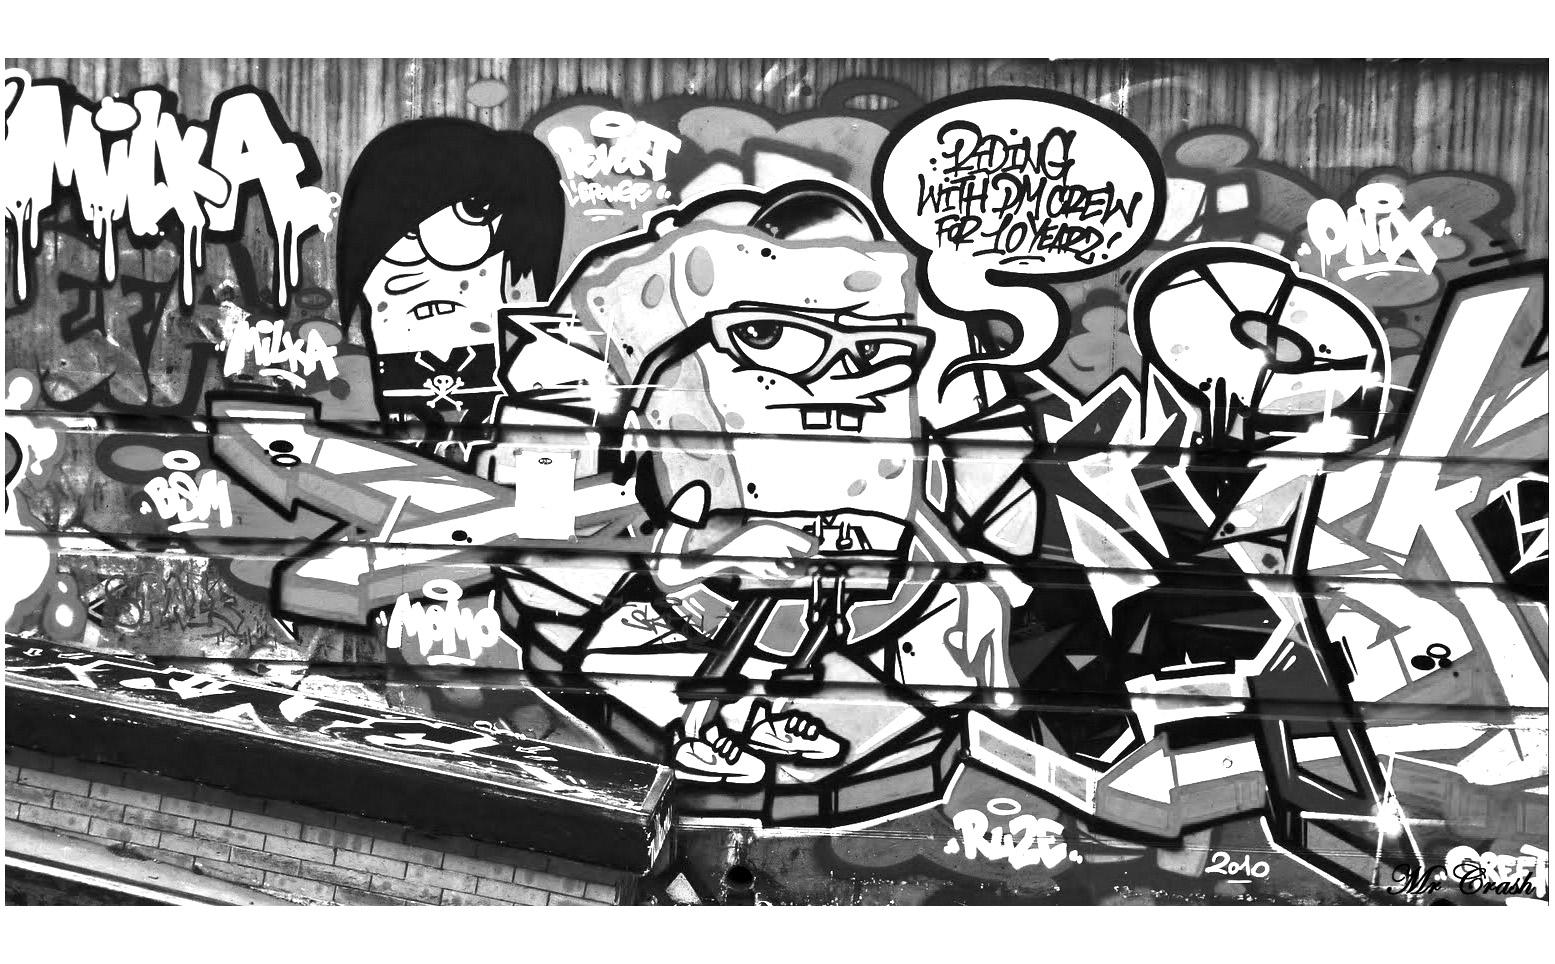 El personaje de Bob Esponja puede servir de inspiración a algunos artistas de Street Art